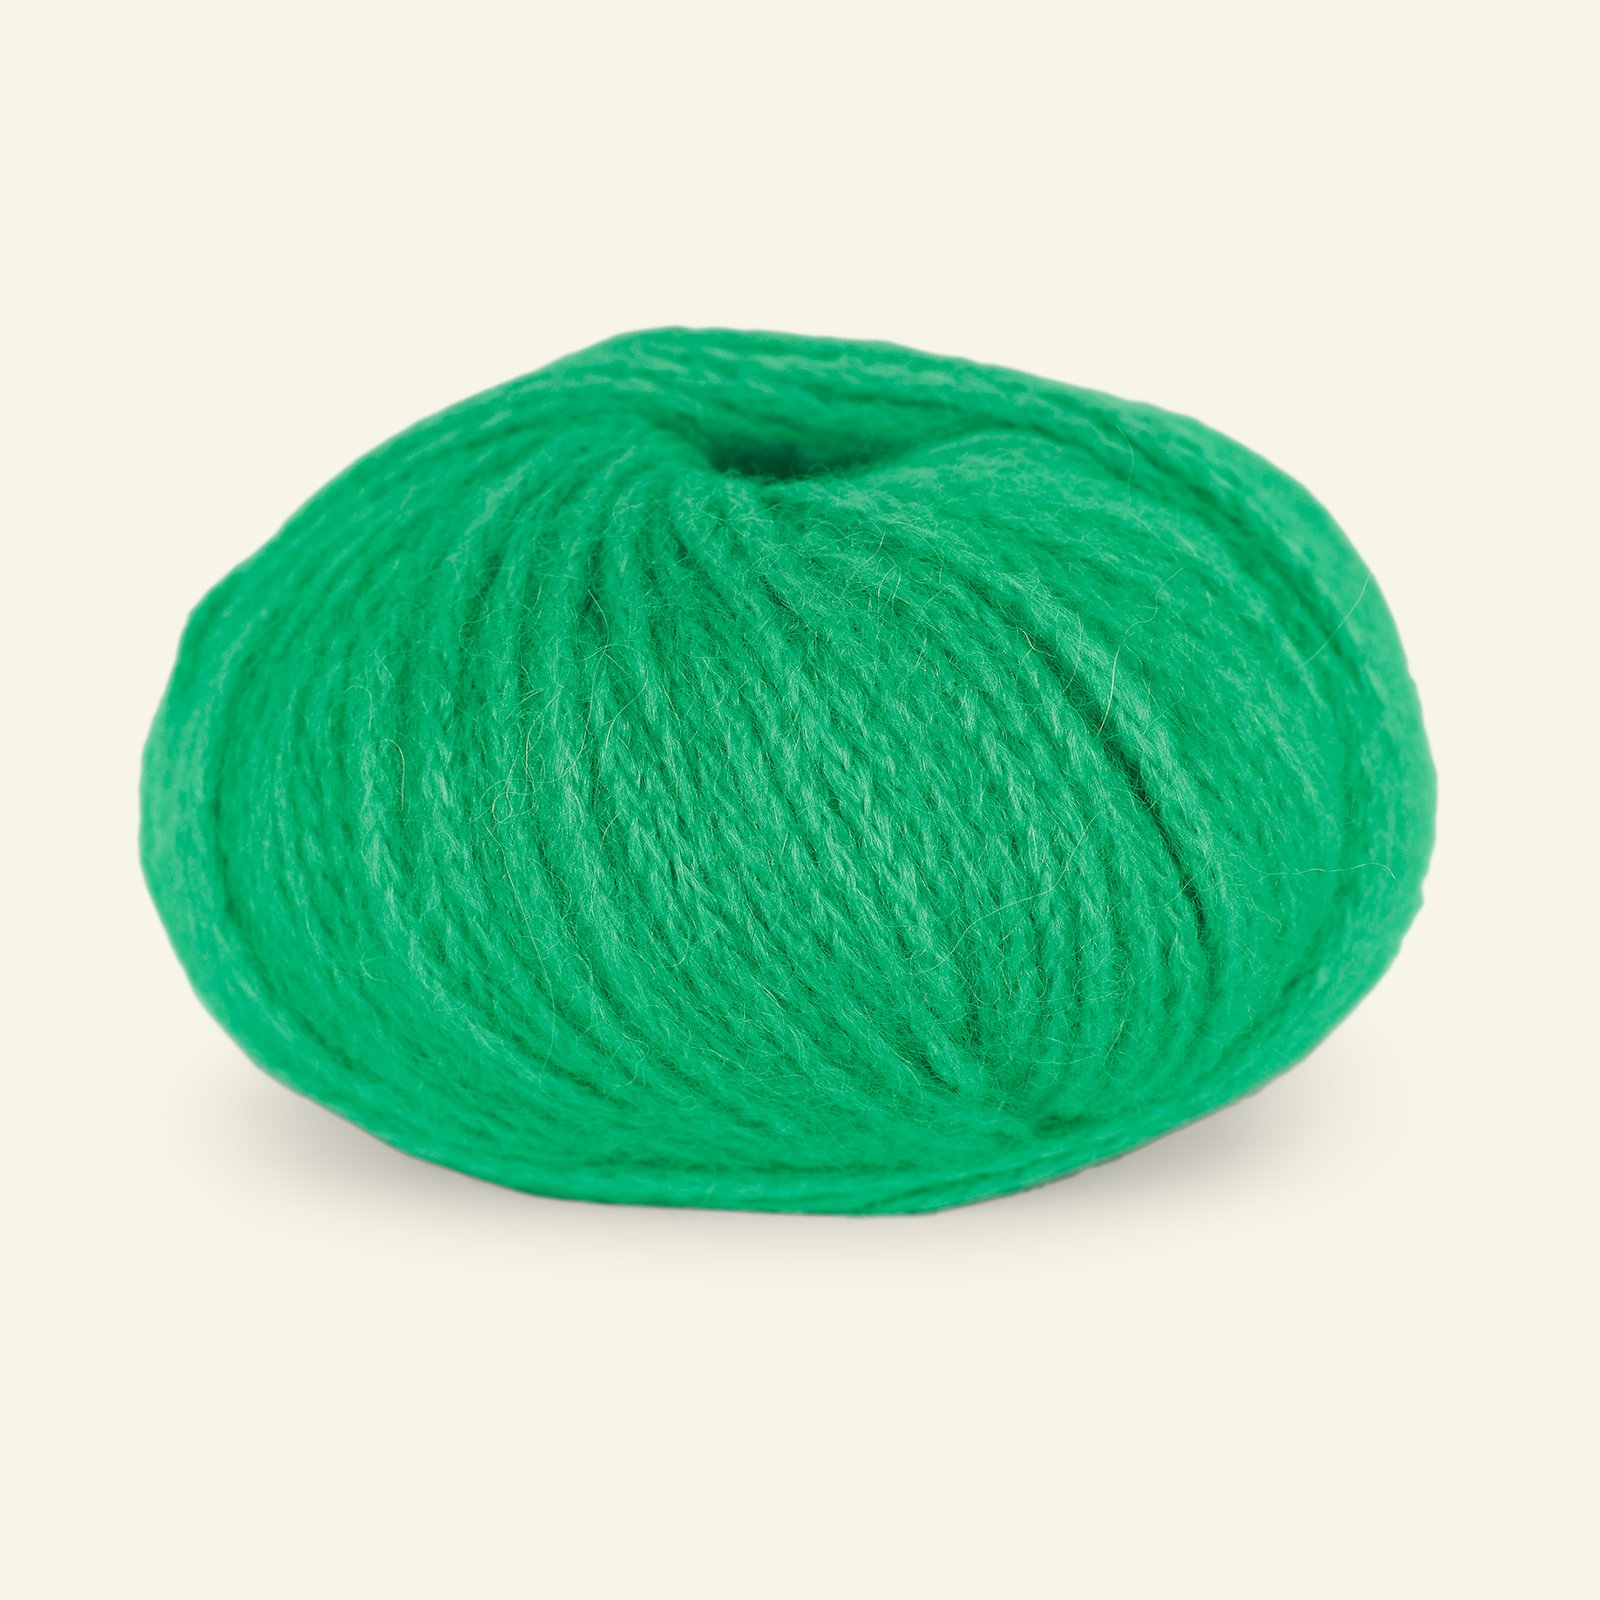 Du Store Alpakka, alpaca mixed yarn "Pus", green (4055) 90000735_pack_b